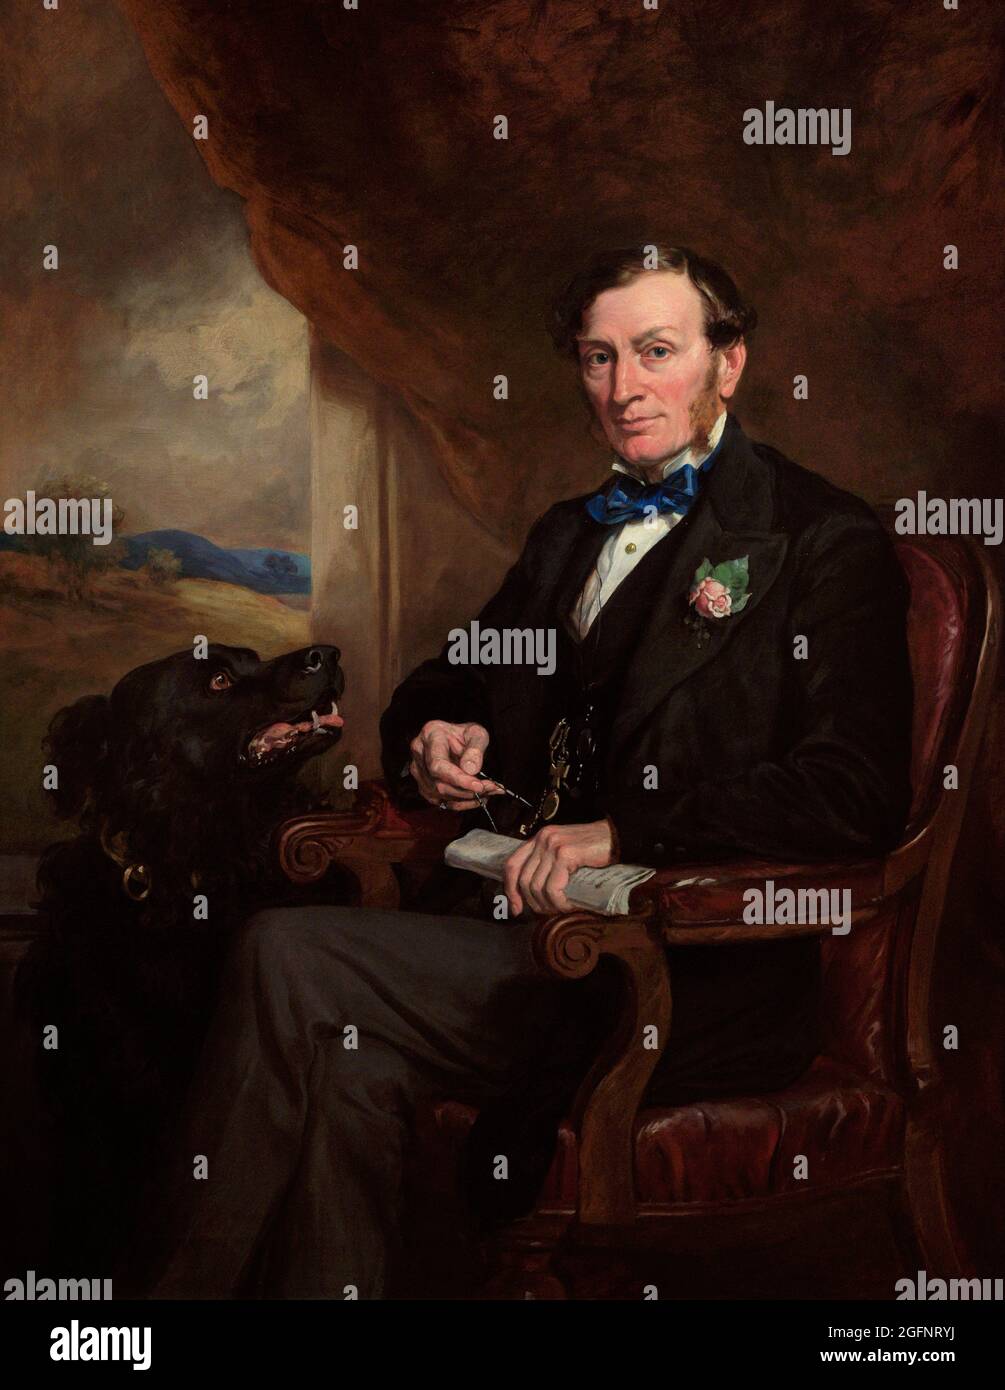 Sir Daniel Gooch (1816-1889), 1° Baronet. Ingegnere ferroviario britannico. Ritratto di Francis Grant (1803-1878). Olio su tela (142,2 x 111,8 cm), 1872. National Portrait Gallery. Londra, Inghilterra, Regno Unito. Foto Stock